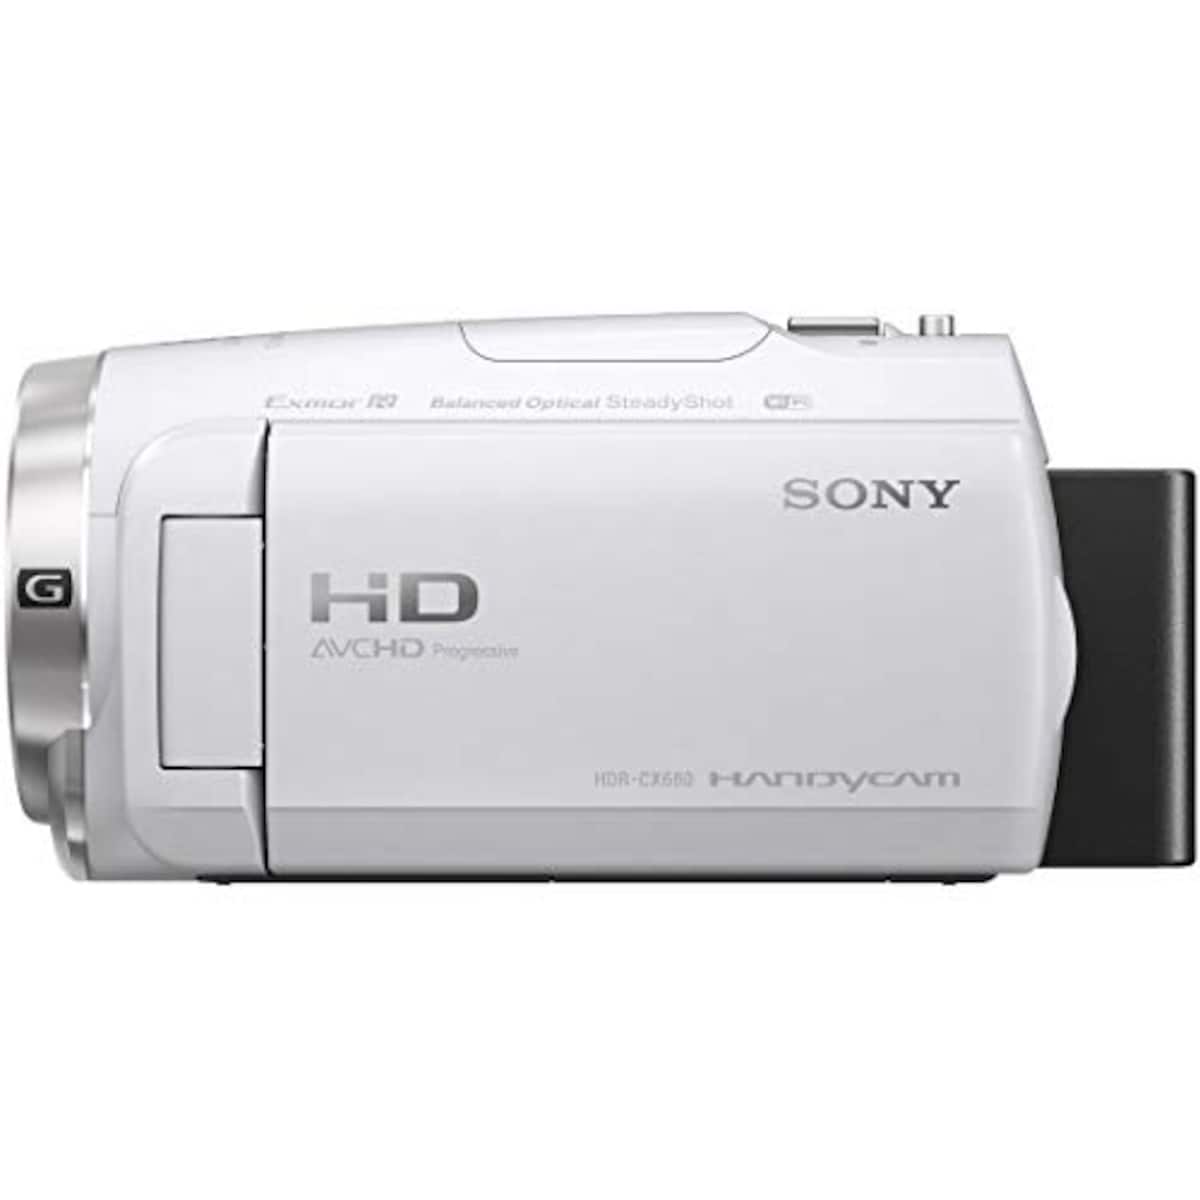  【CX680 と ケース&ストラップ セット】 大切なカメラをキズや汚れからガードしたい方に。HDR-CX680 ホワイト + LCS-MCS2 ライトブラウン画像10 